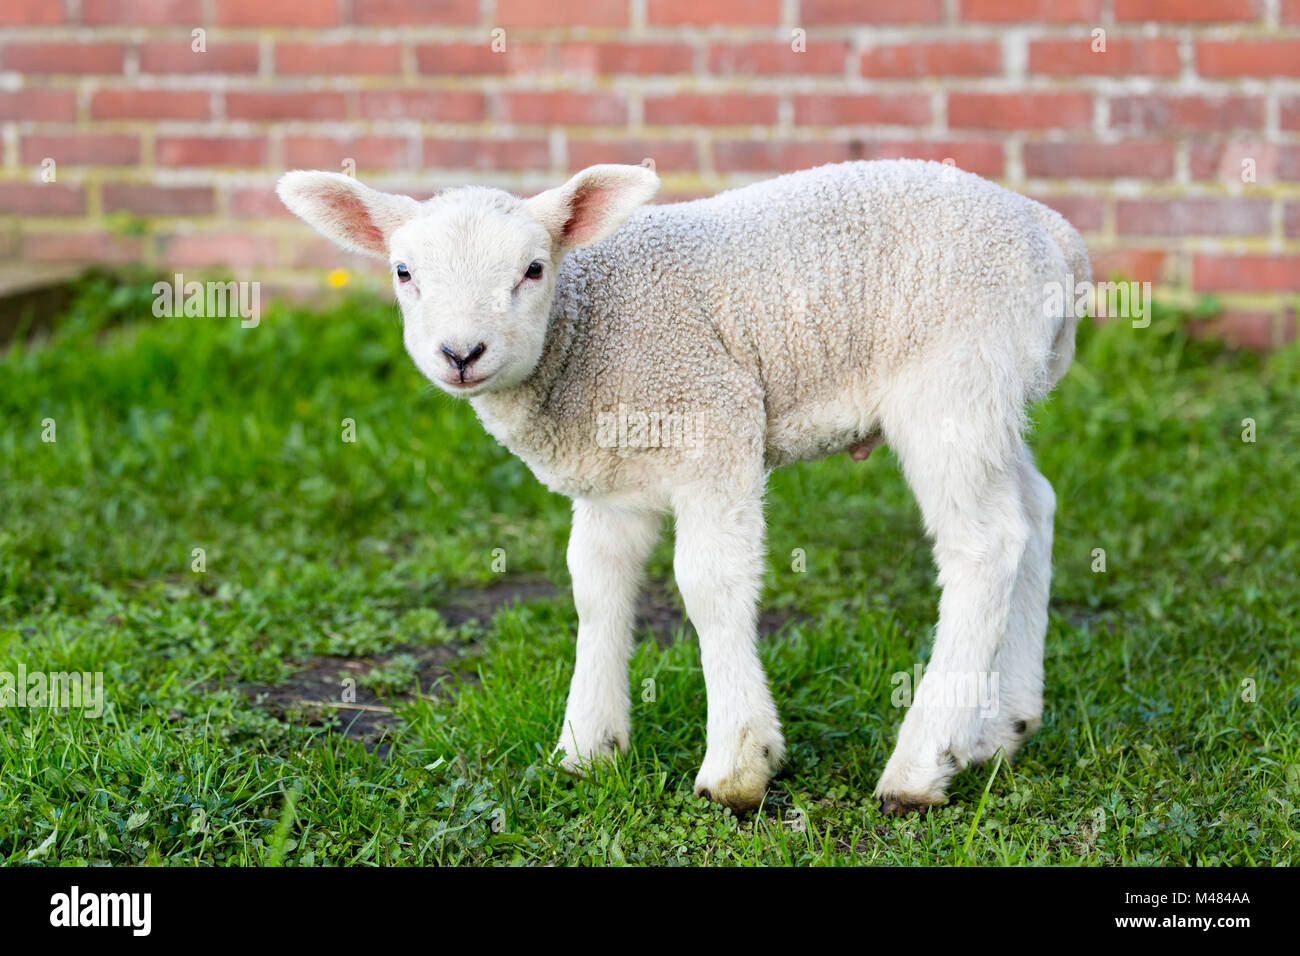 Un agneau nouveau-né blanc debout dans l'herbe verte avec mur Banque D'Images